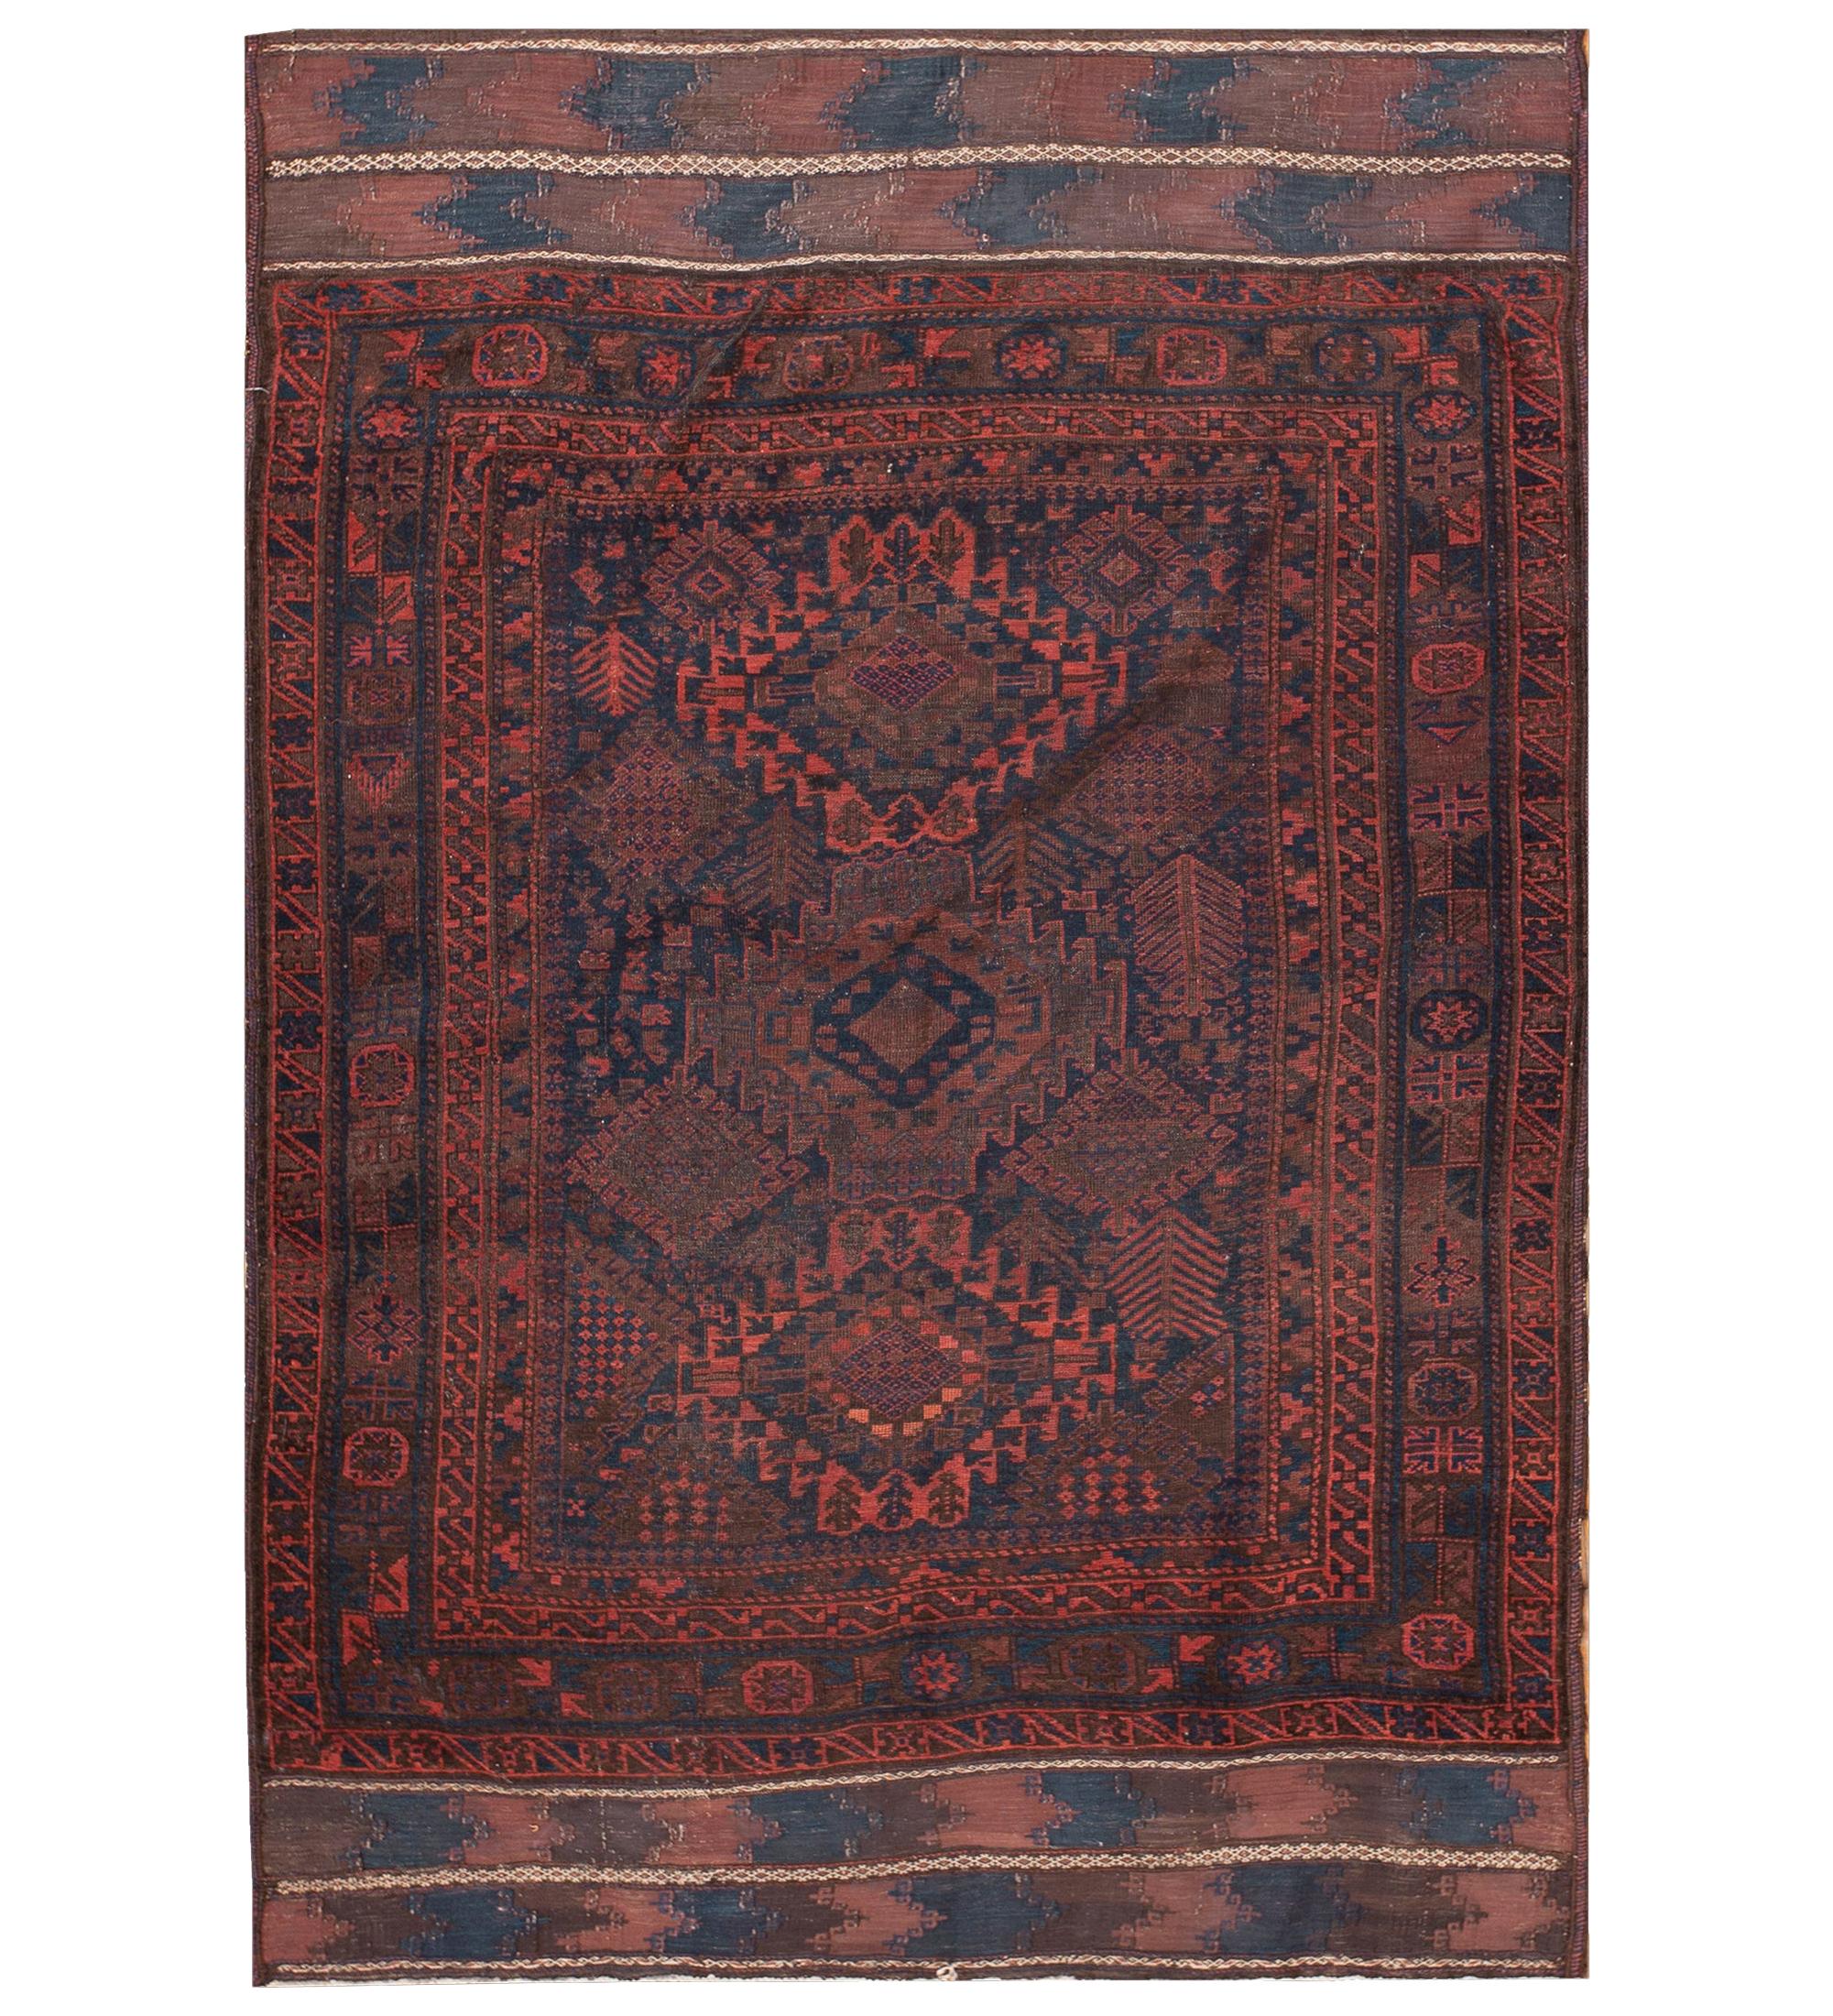 Baluch-Teppich aus dem späten 19. Jahrhundert ( 4'6" x '6'9" - 137 x 206)